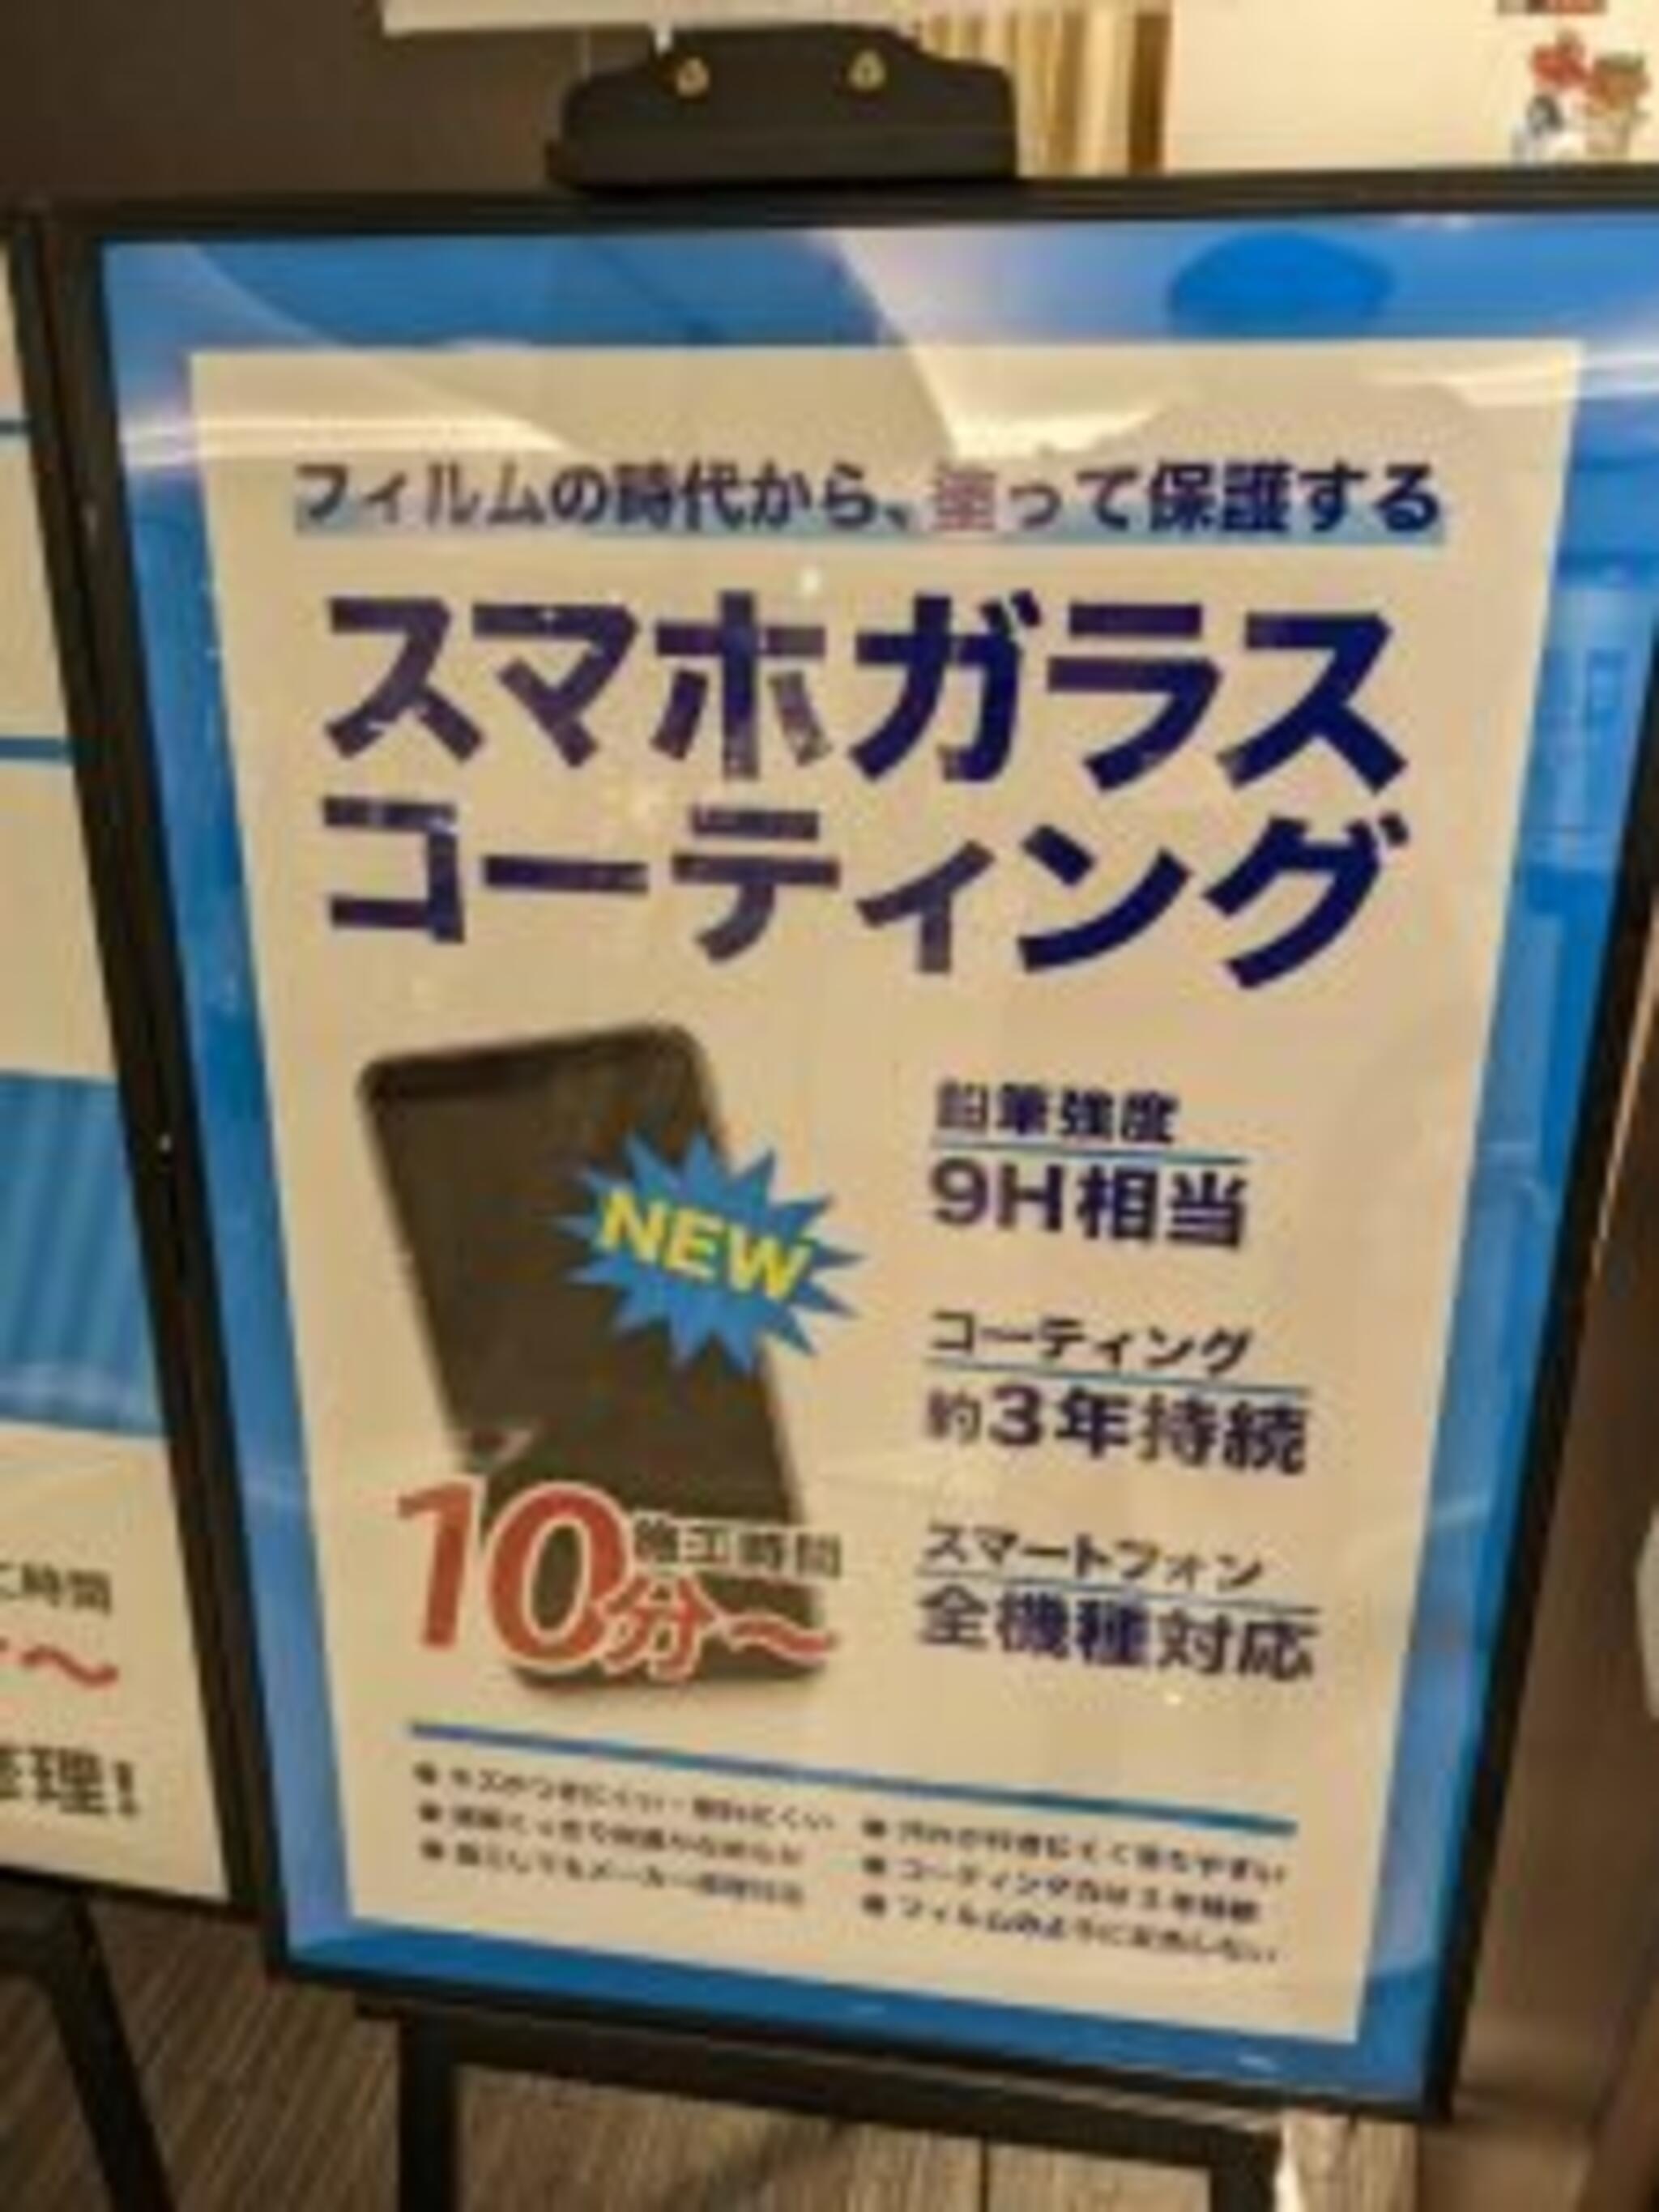 iPhone・iPad・Switch修理店 スマートクール イオンモール広島祇園店からのお知らせ(スマホ の大事な画面を守りましょう！)に関する写真